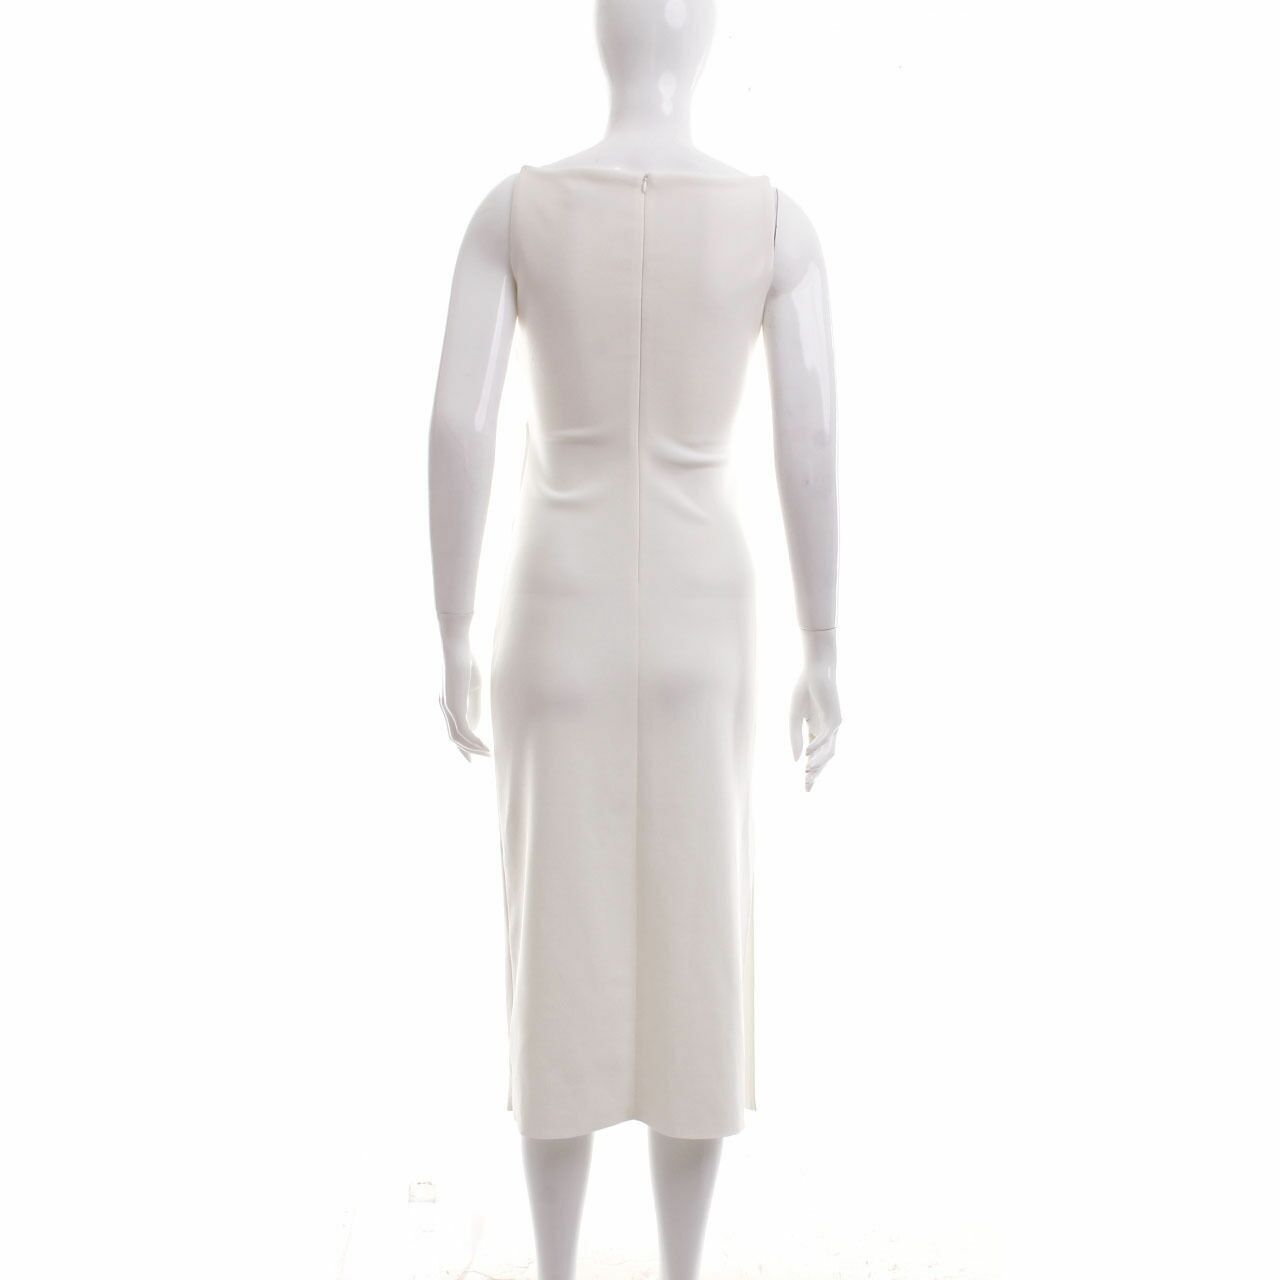 Bec & Bridge White Midi Dress